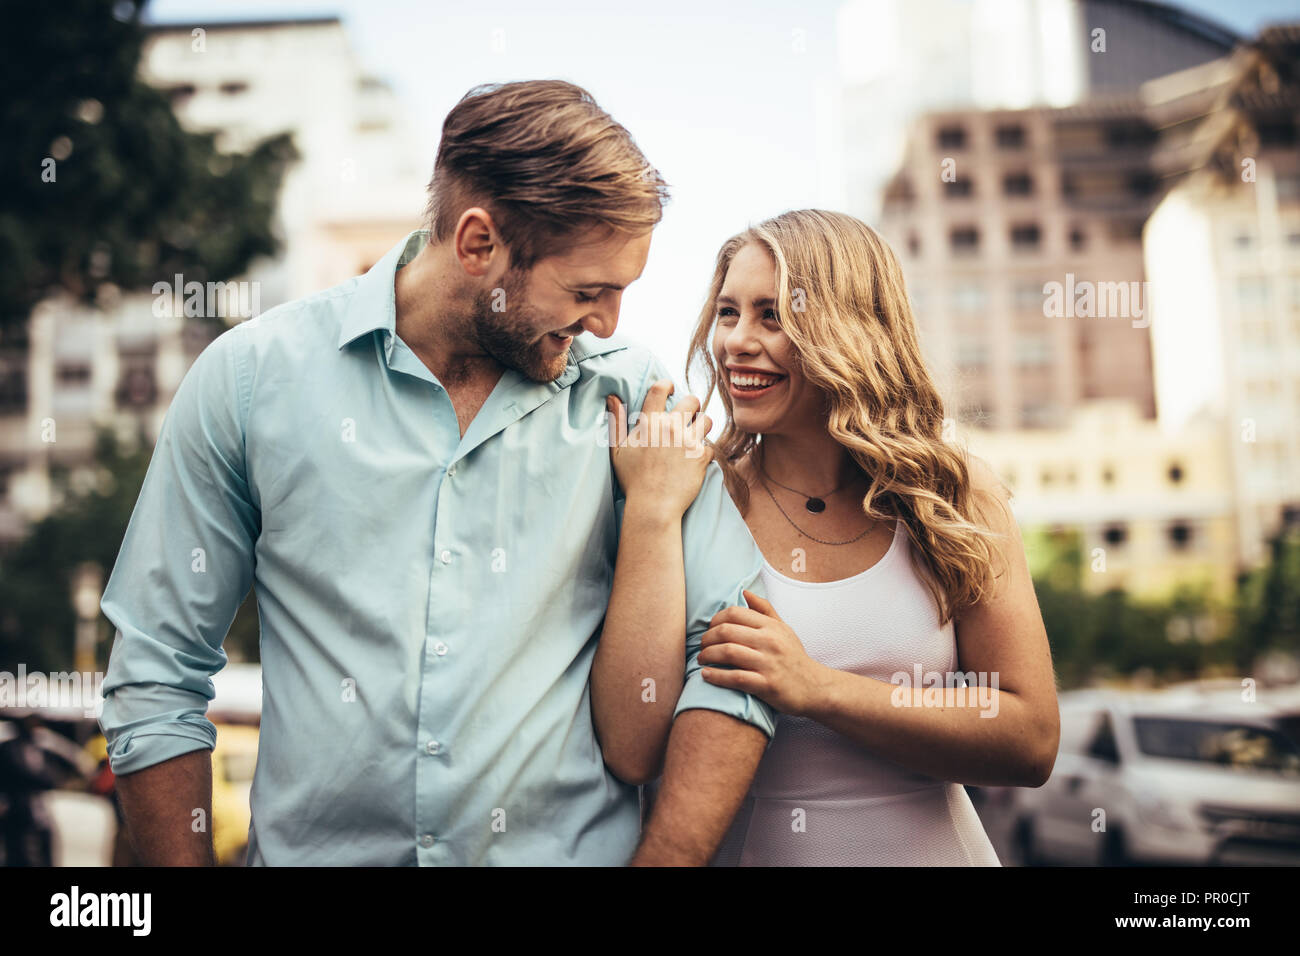 Lächelnde Frau zu Fuß auf der Straße mit ihrem Partner seine Hand. Paar in fröhlicher Stimmung zu Fuß auf der Straße zu suchen. Stockfoto